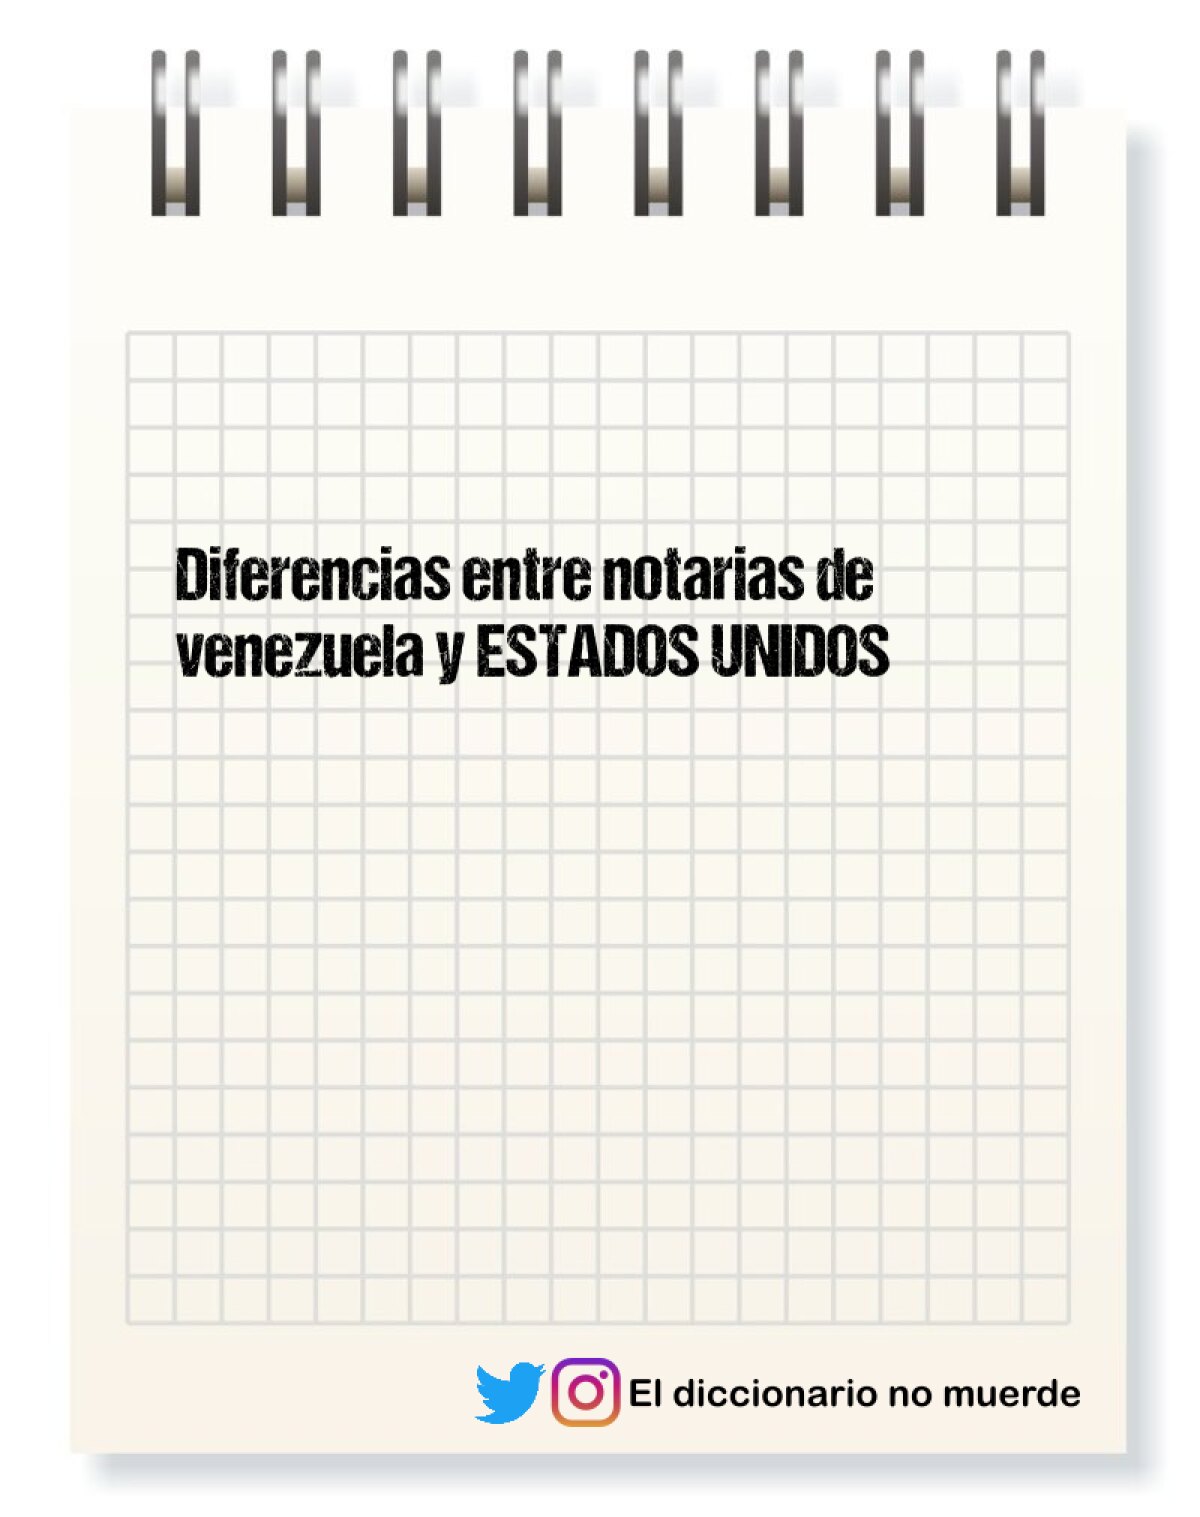 Diferencias entre notarias de venezuela y ESTADOS UNIDOS